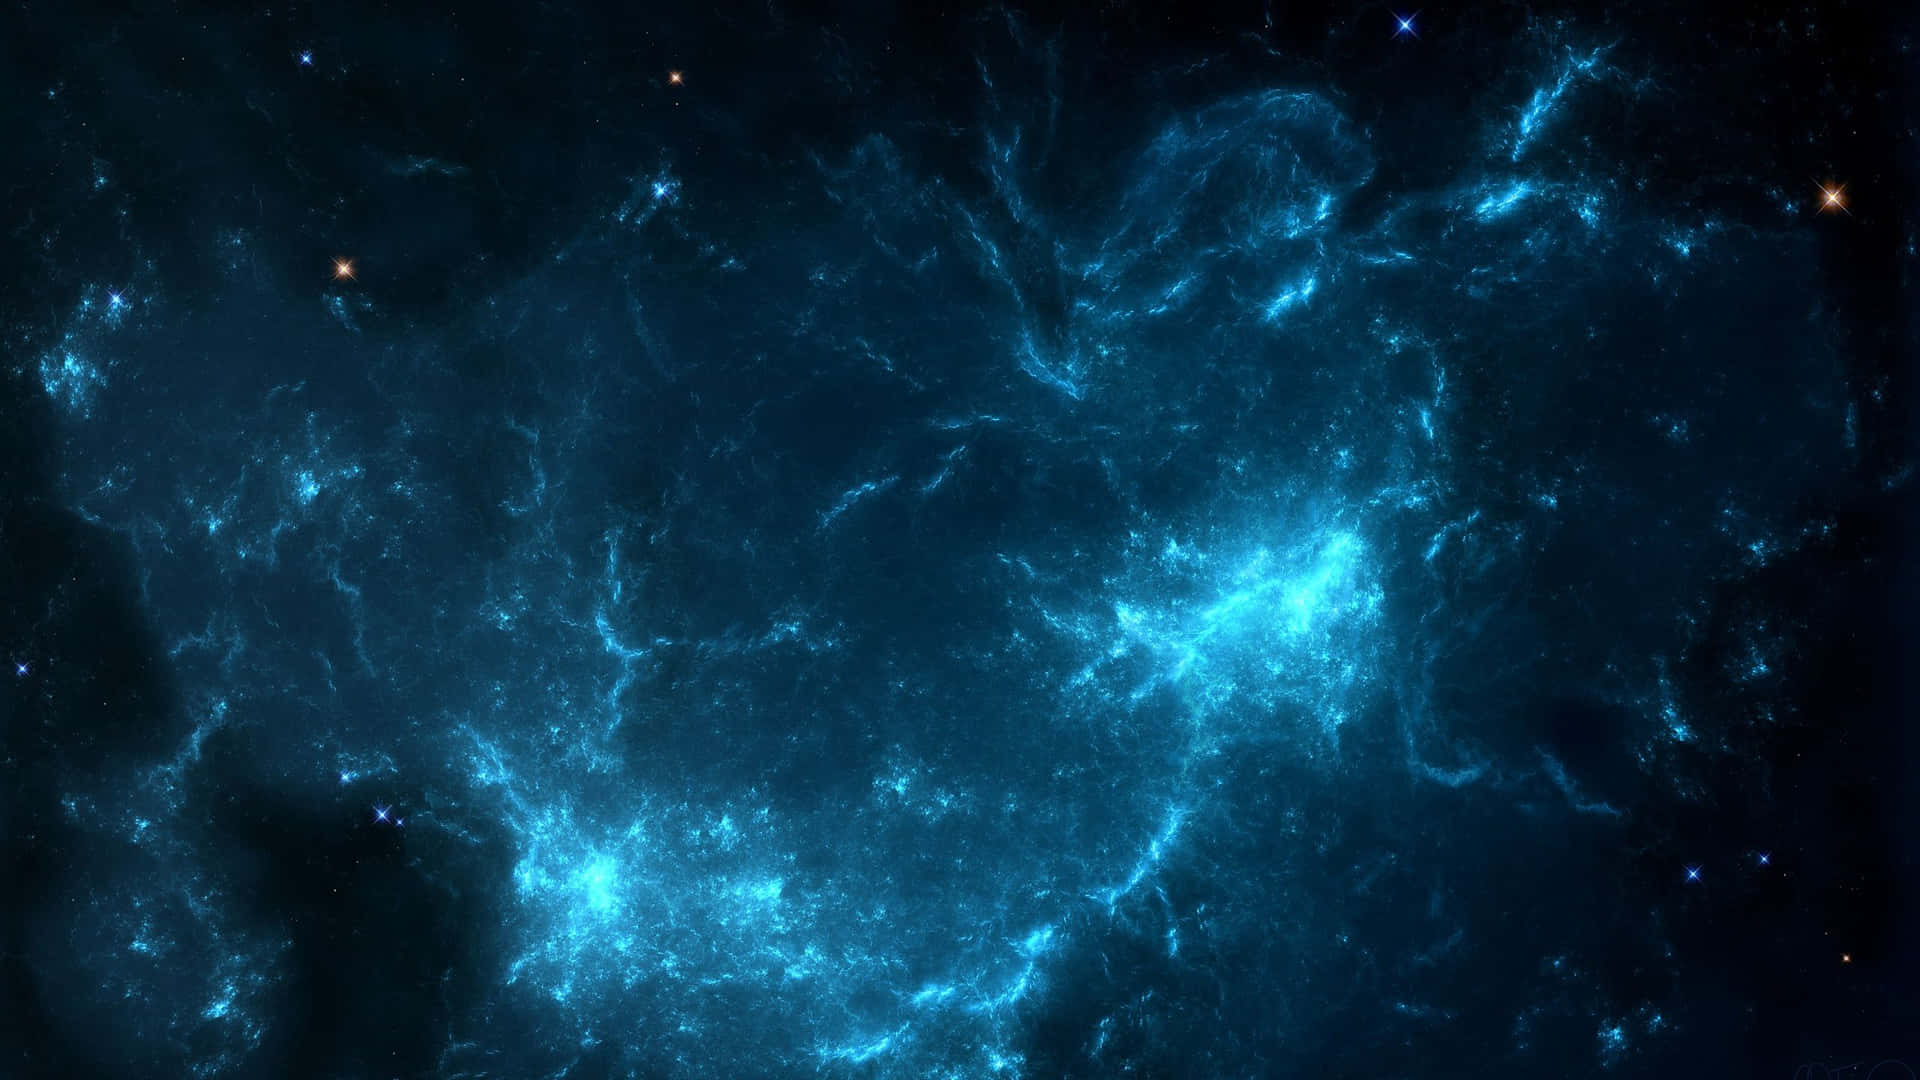 Einlebhaftes Dunkelblaues Leuchtendes Sternbild Gegen Einen Kosmischen Nachthimmel. Wallpaper